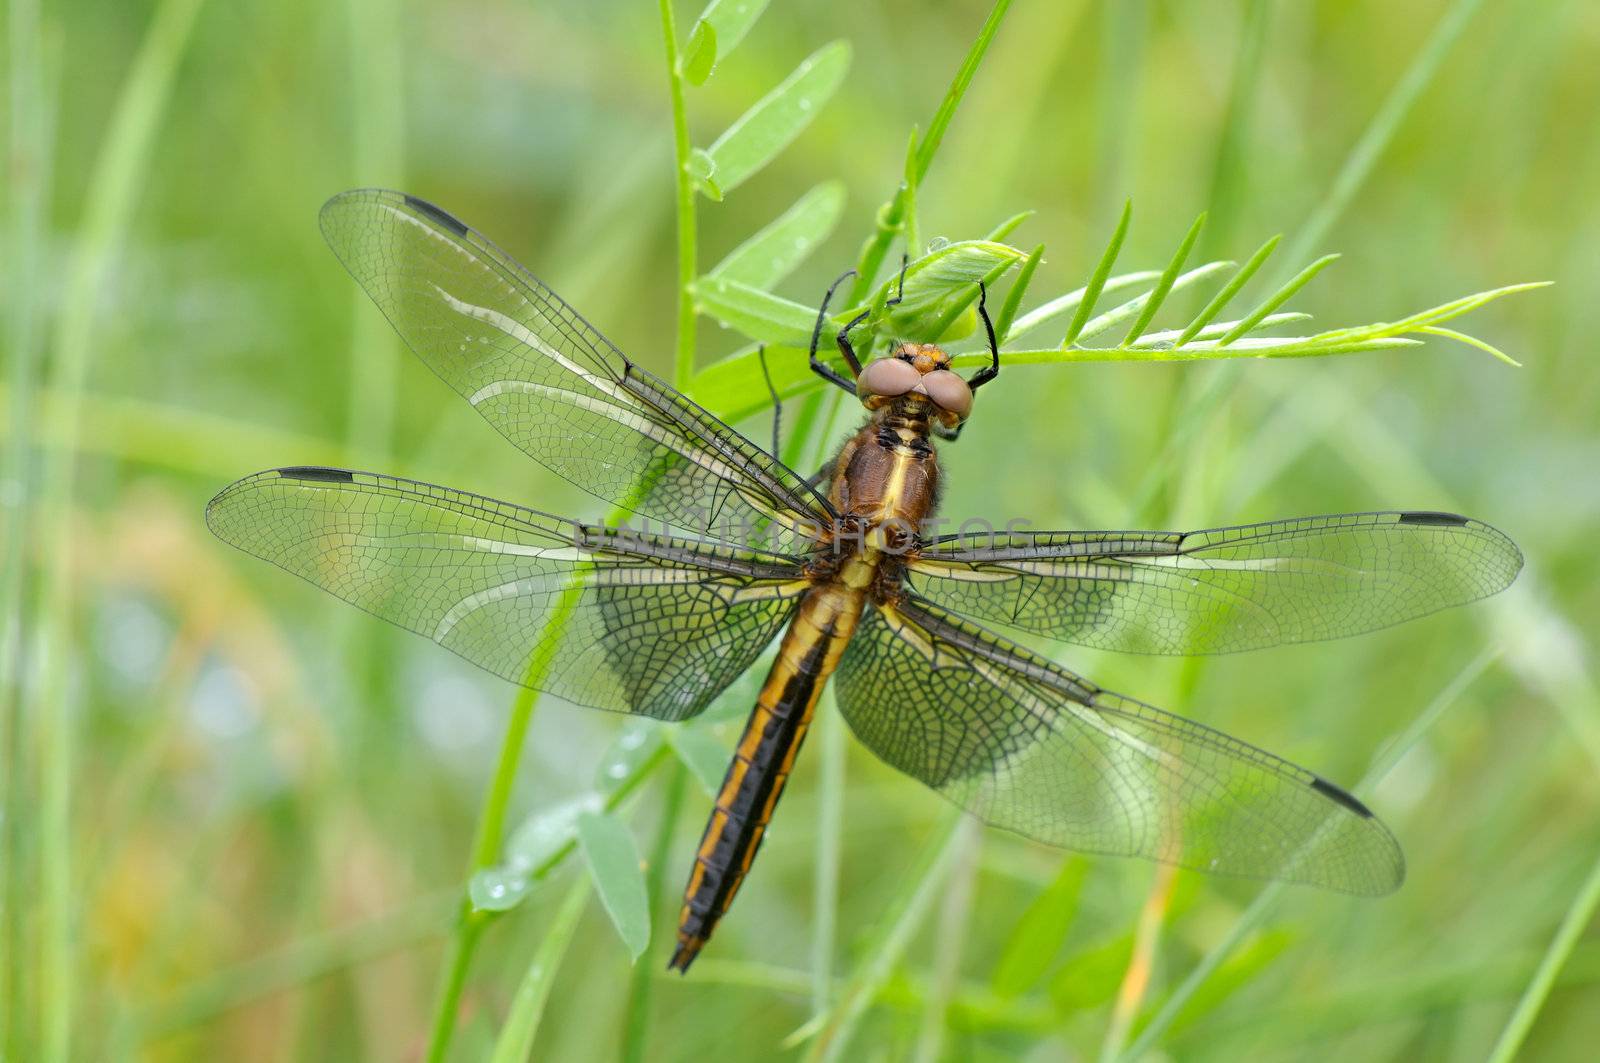 Widow Skimmer dragonfly by Hbak